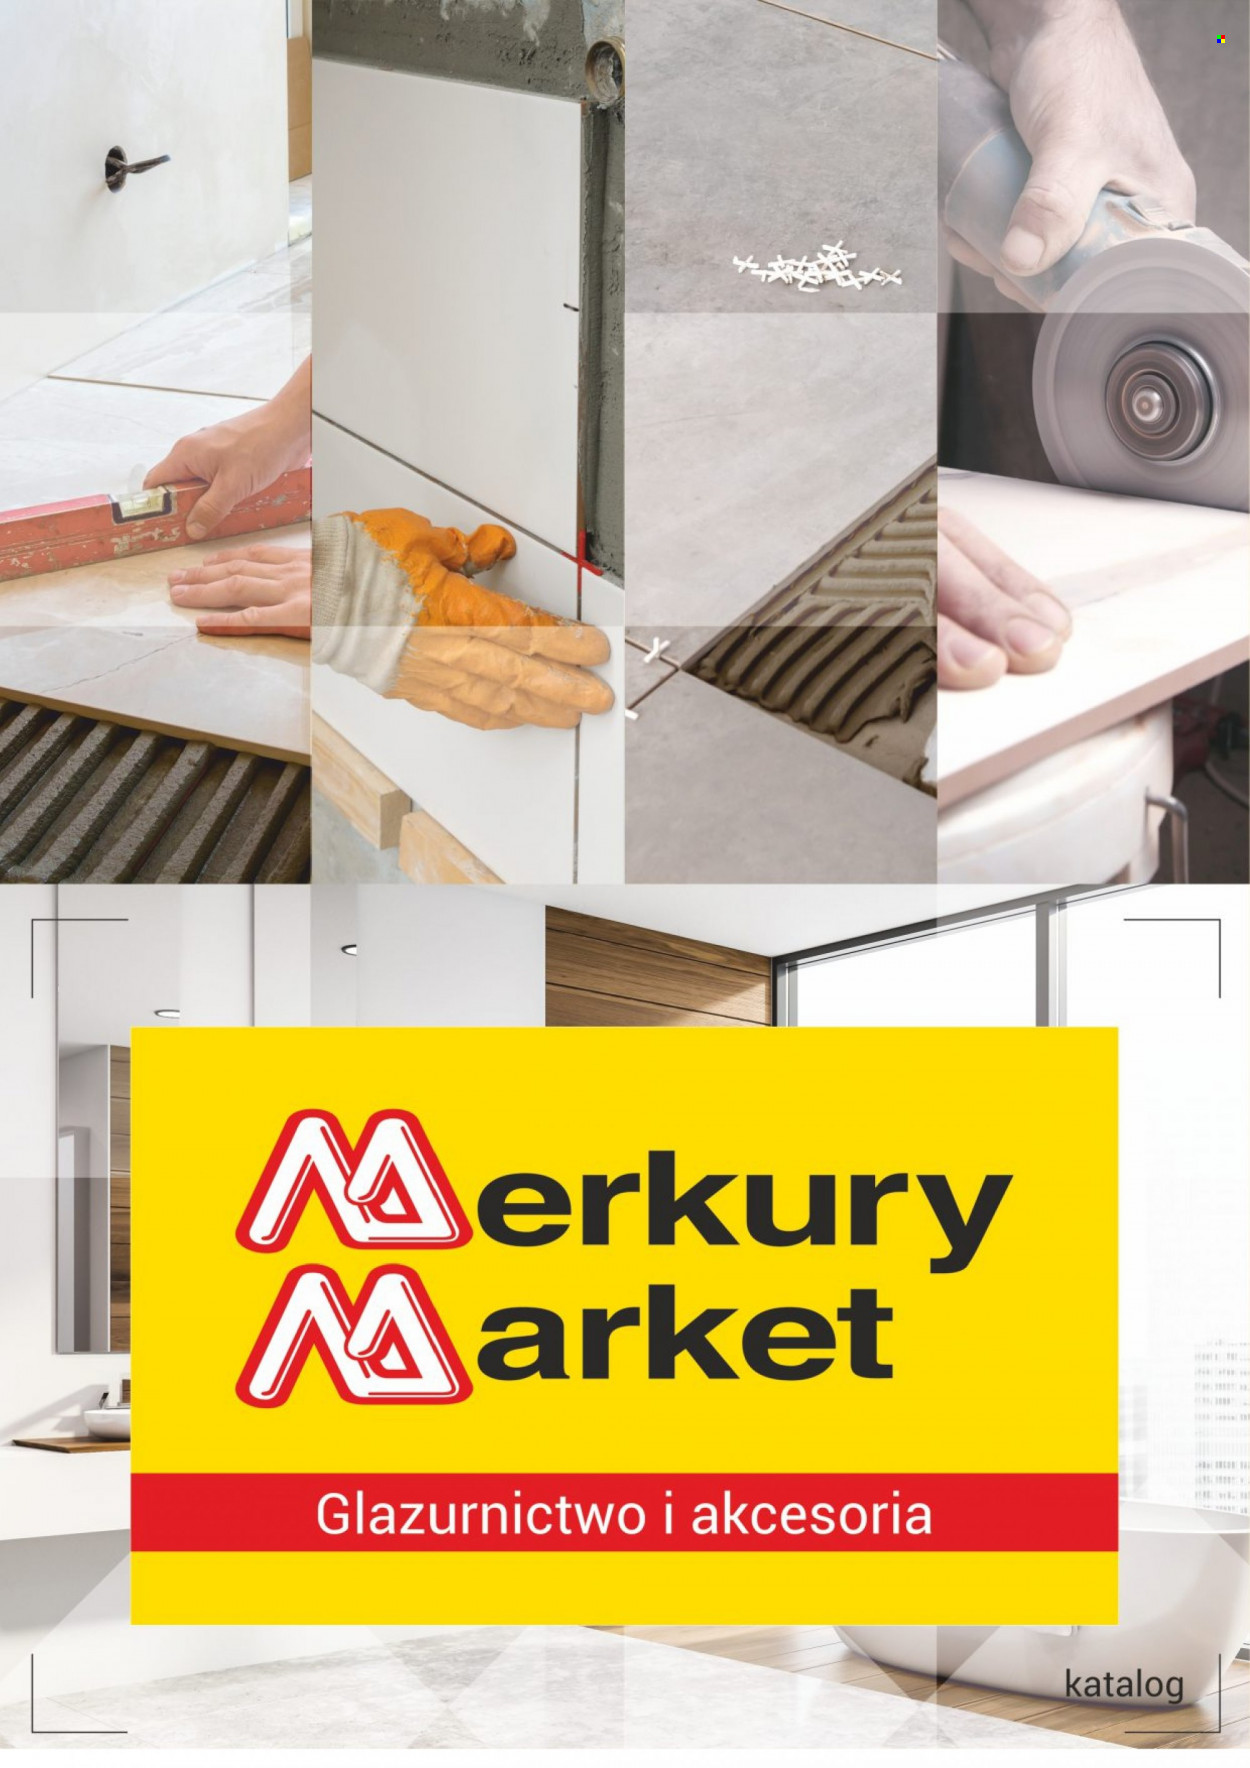 Gazetka Merkury Market.